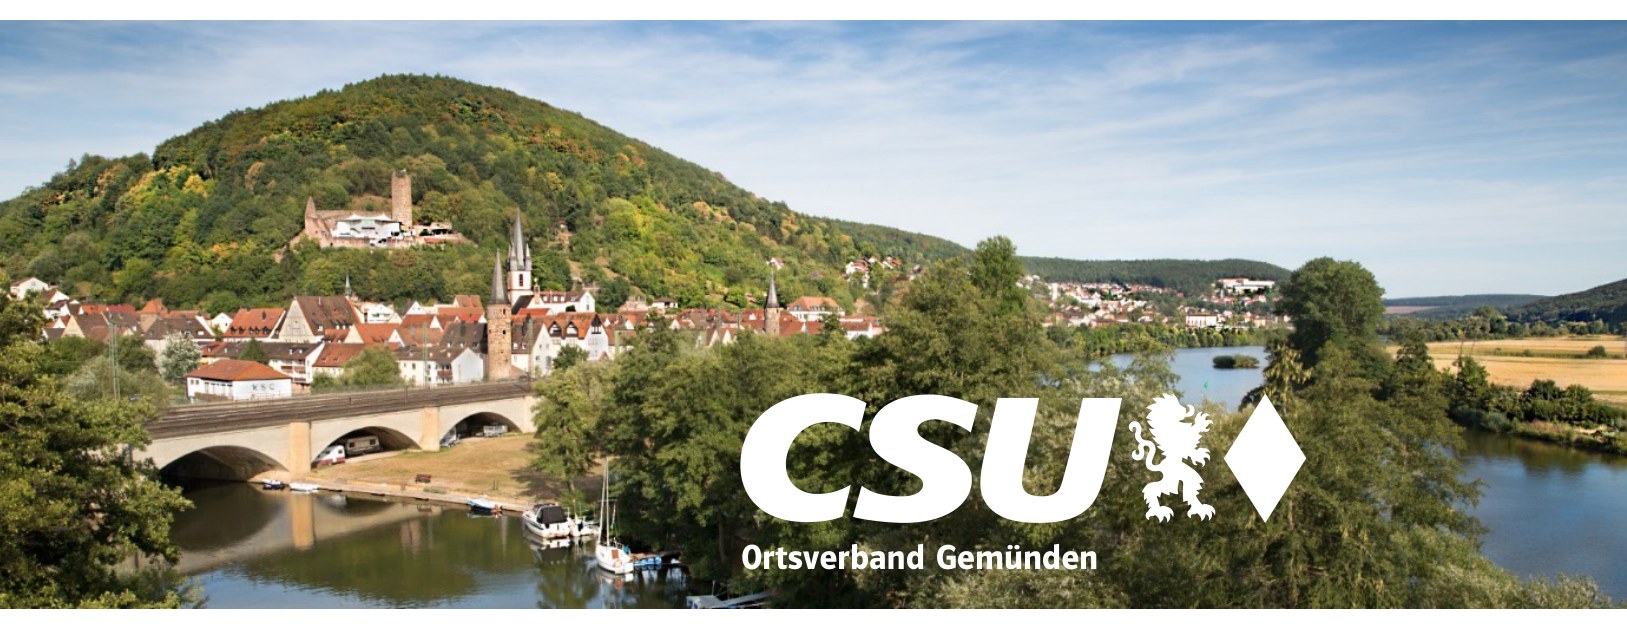 CSU Gemünden - Politische Partei für konservative Werte und regionale Interessen